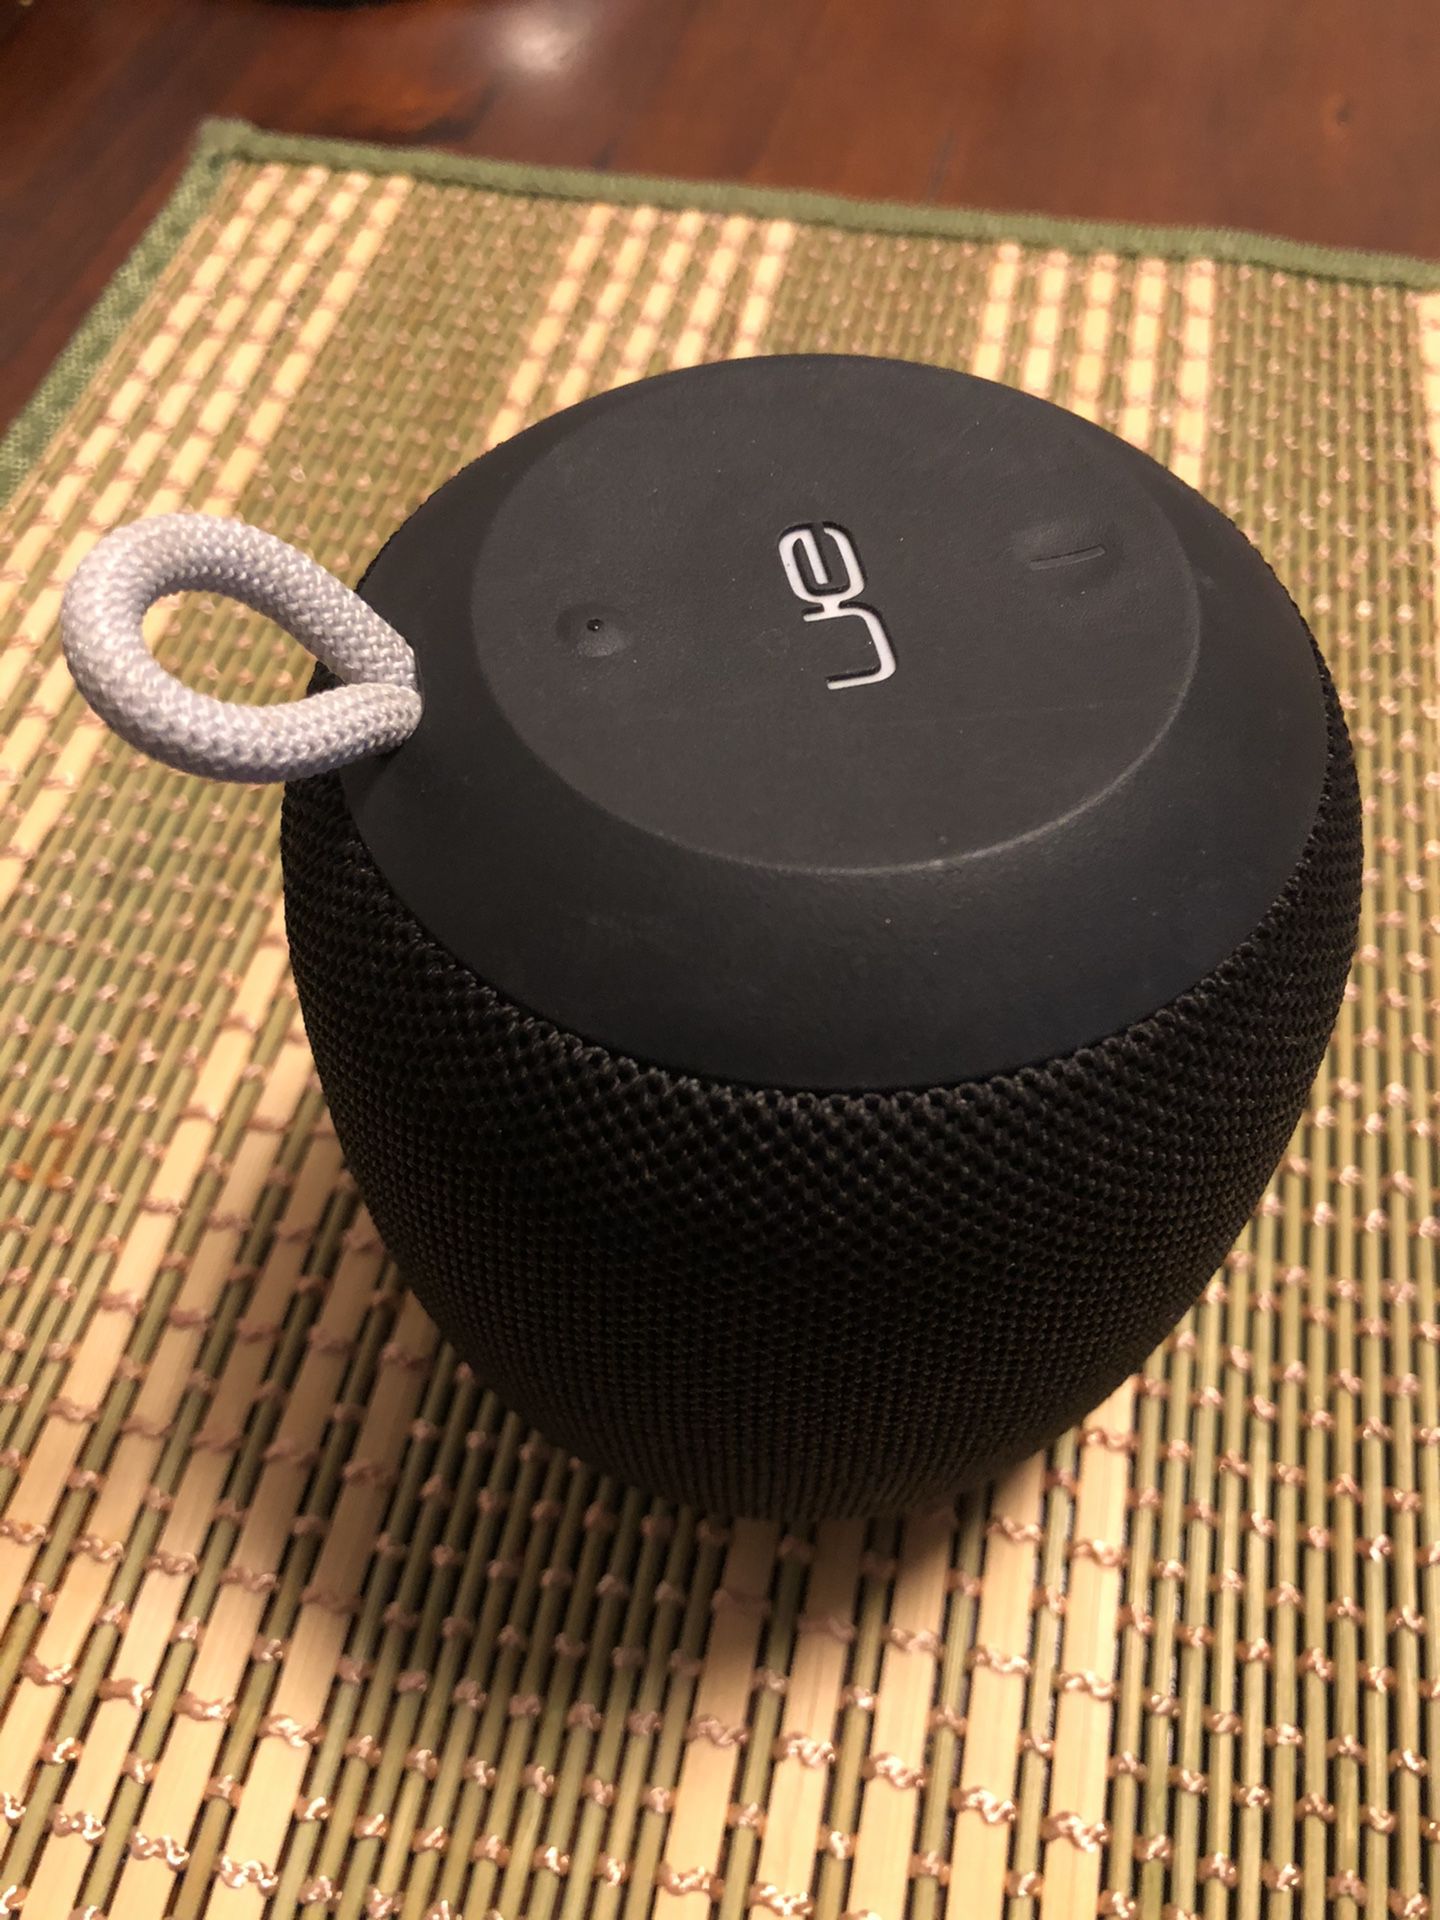 UE S-00163 Wonderboom Portable Bluetooth speaker.